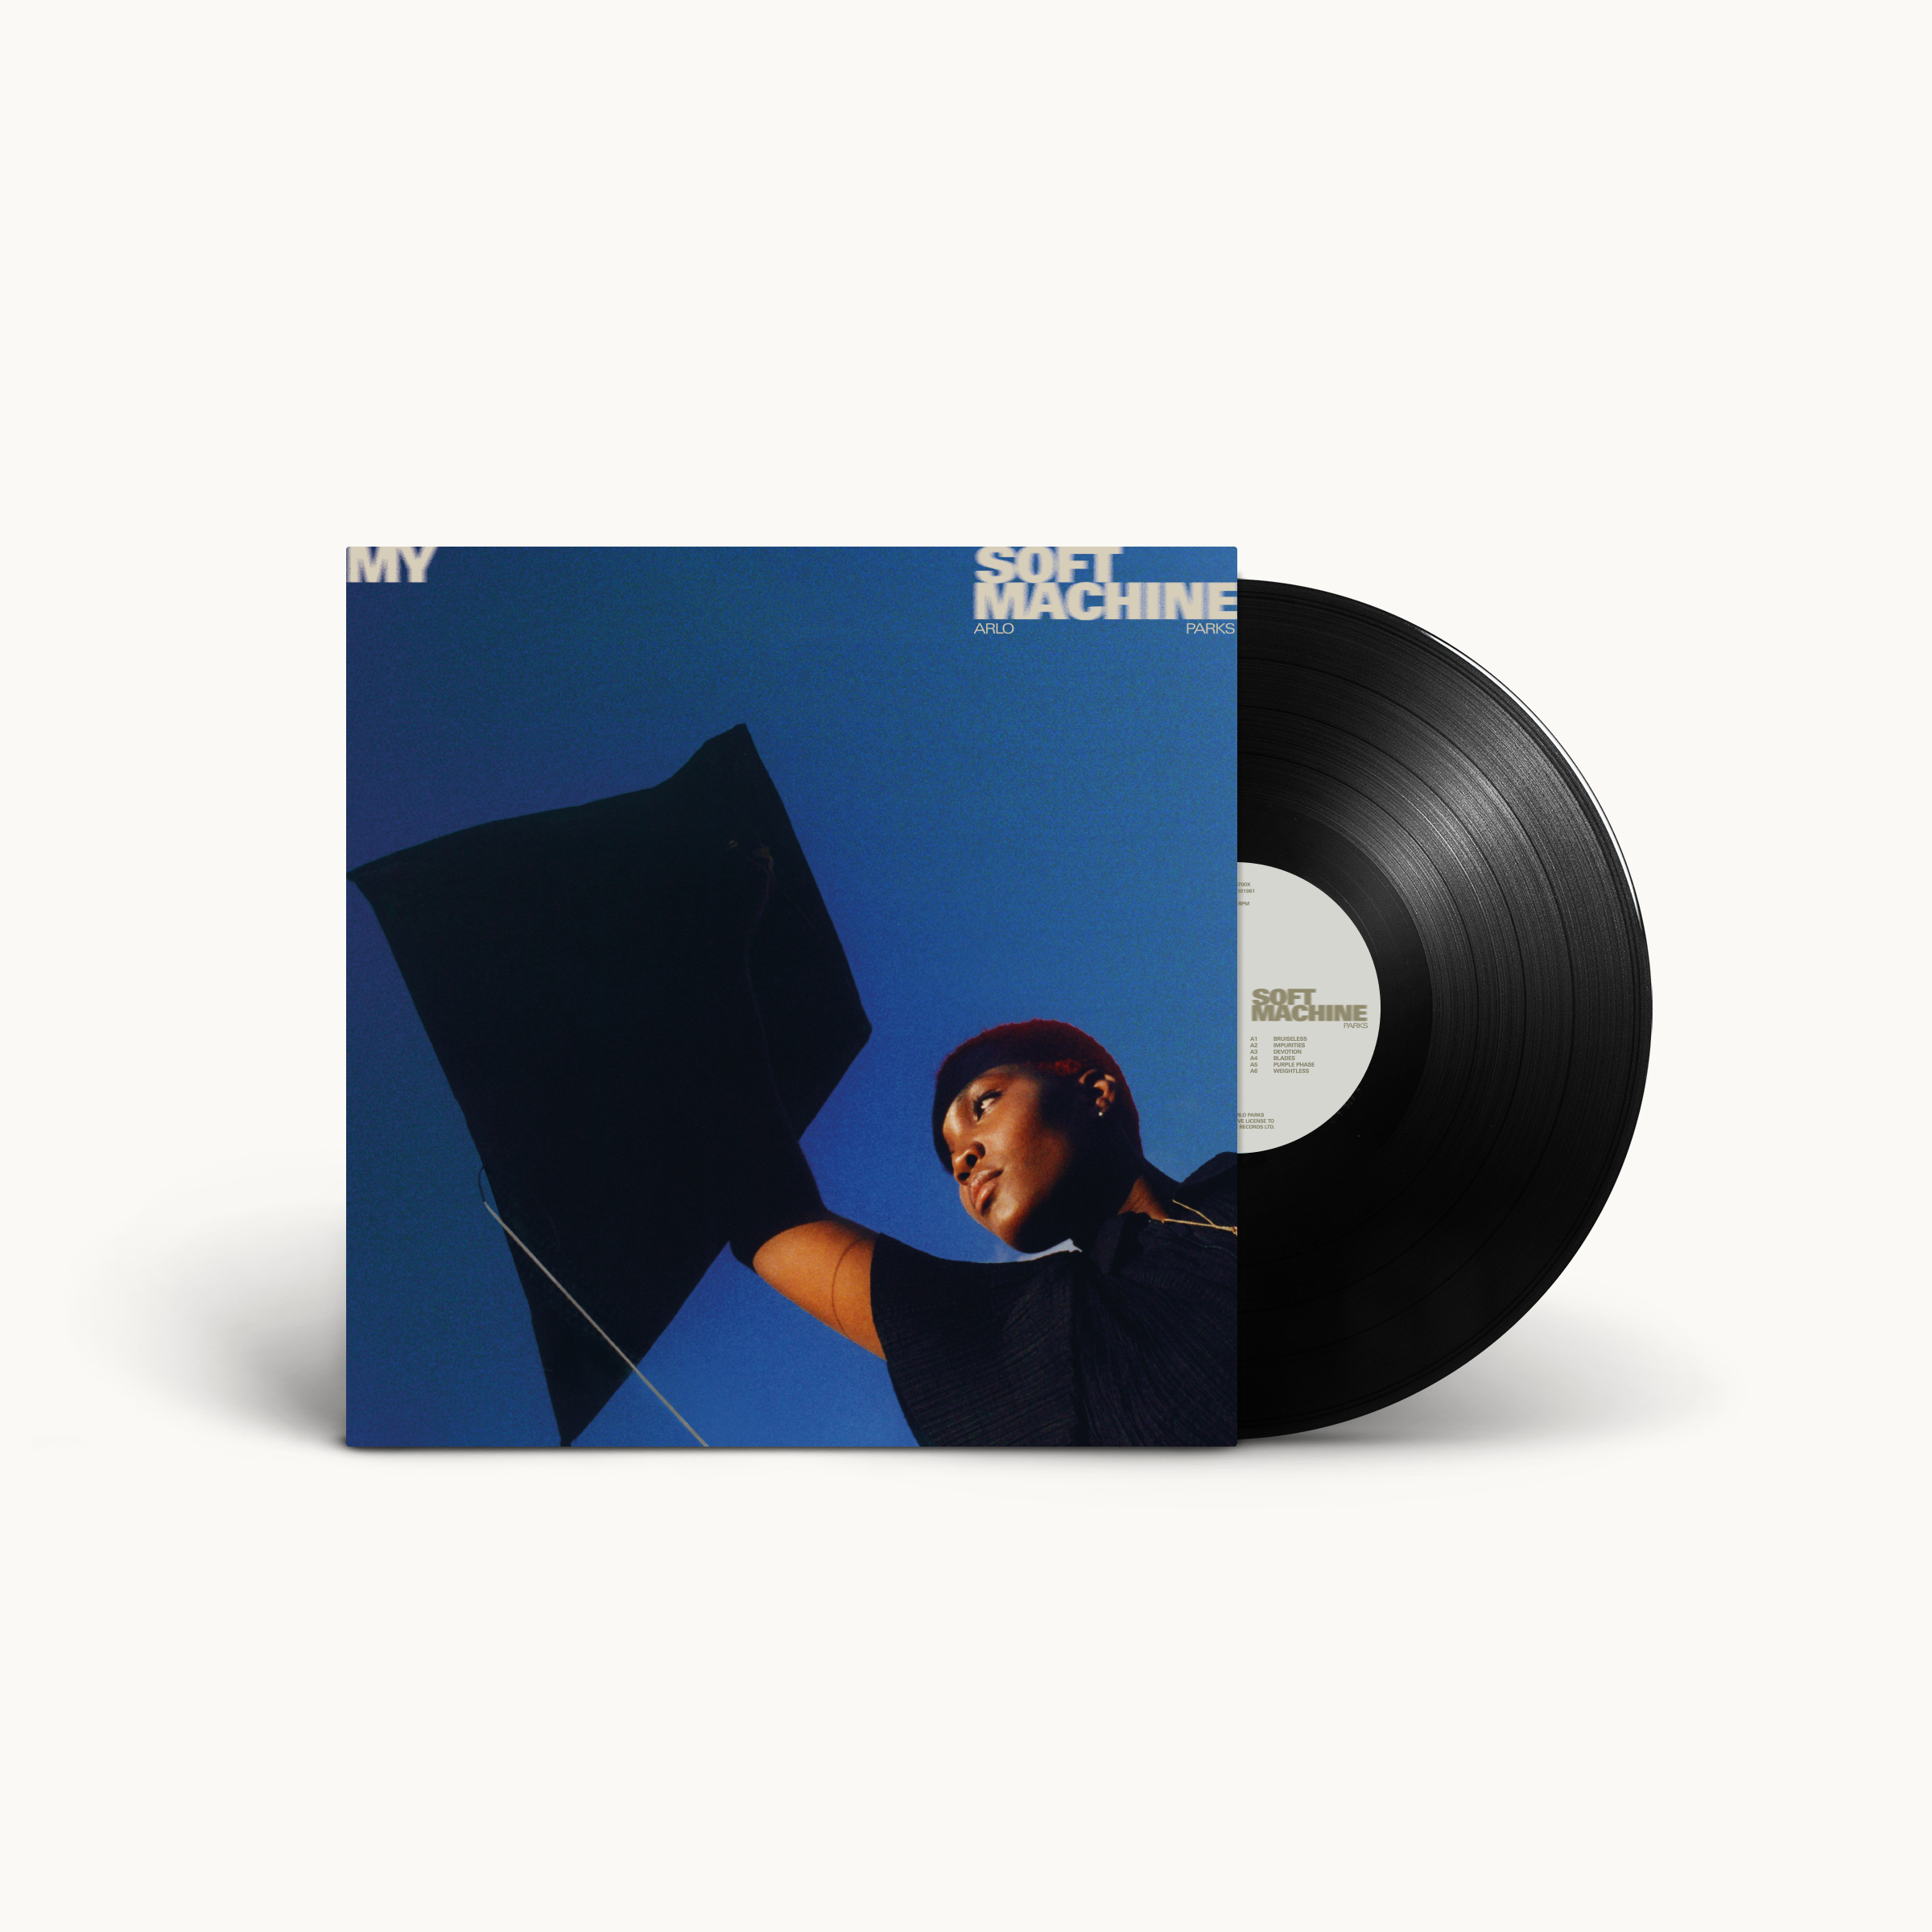 My Soft Machine: Vinyl LP